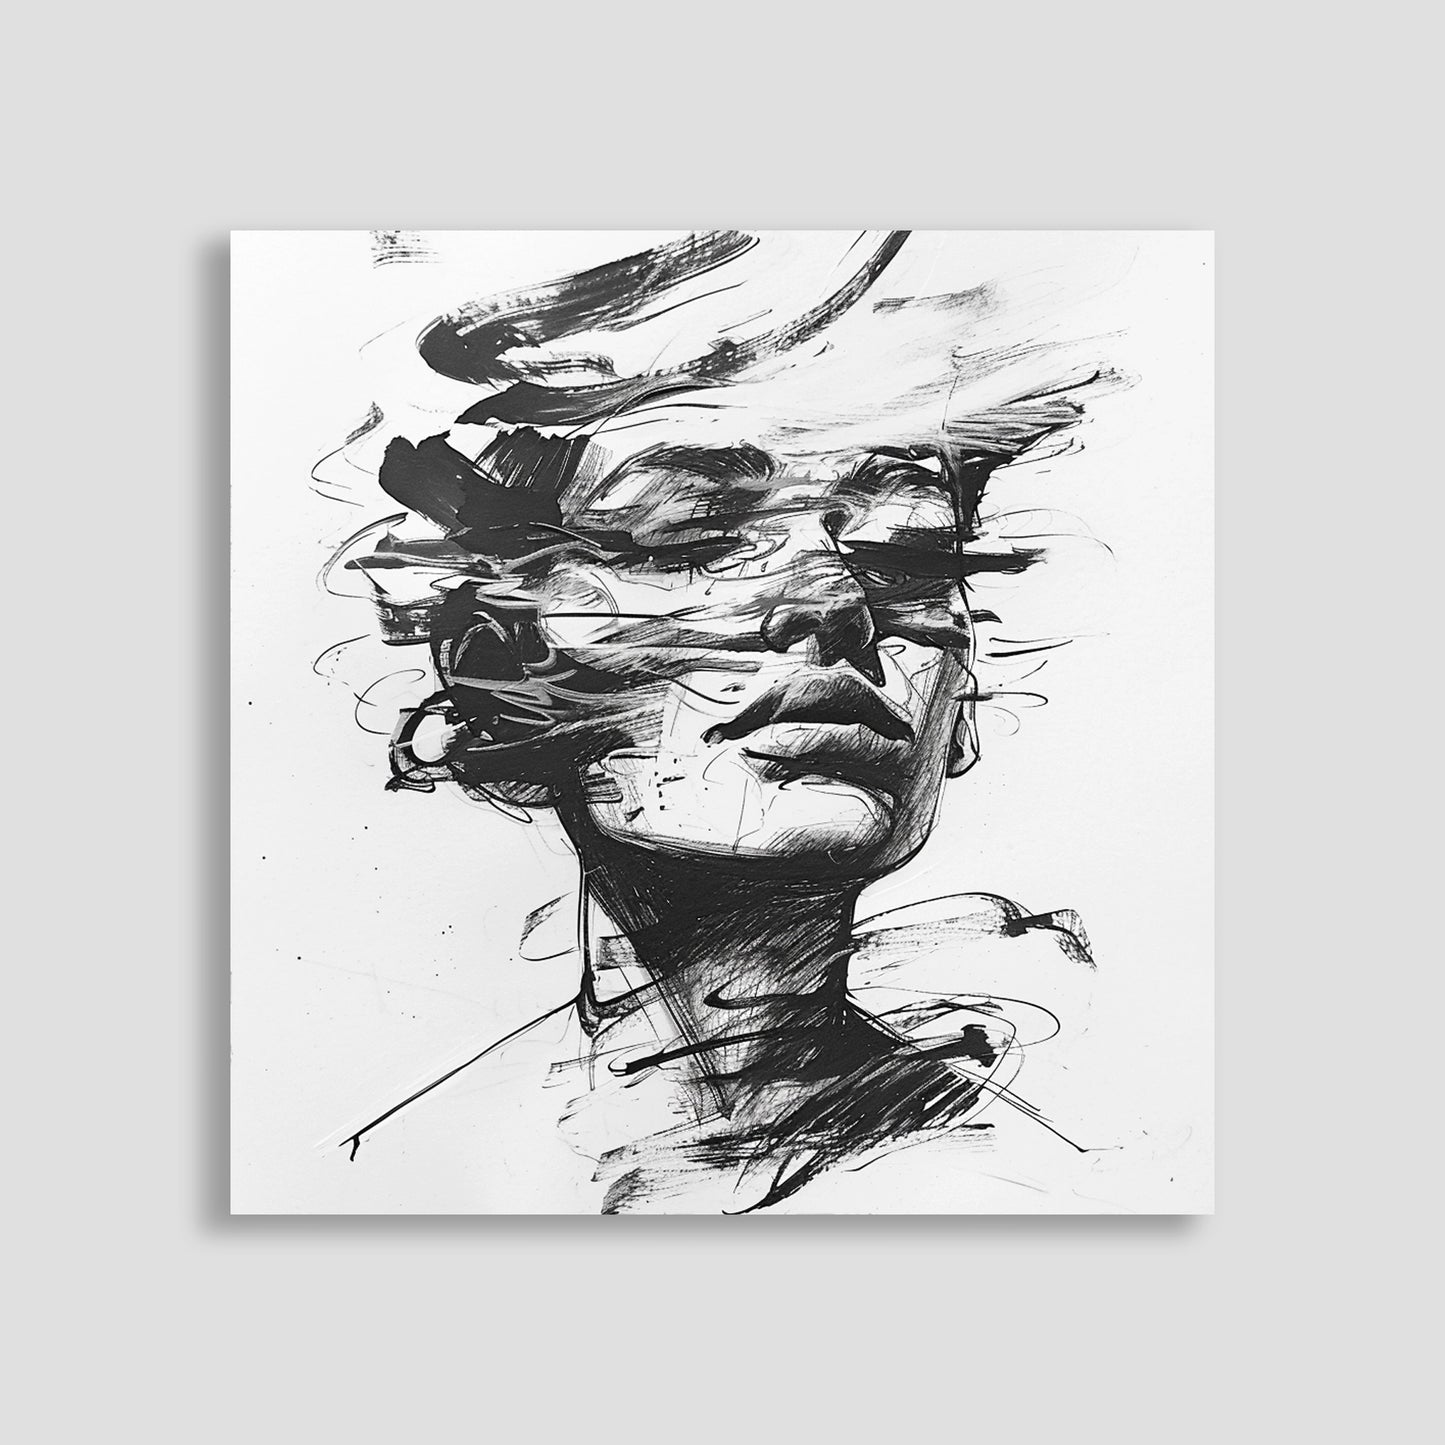 Ilustración en blanco y negro de un rostro humano rodeado por líneas dinámicas y abstractas, creando una sensación de movimiento.